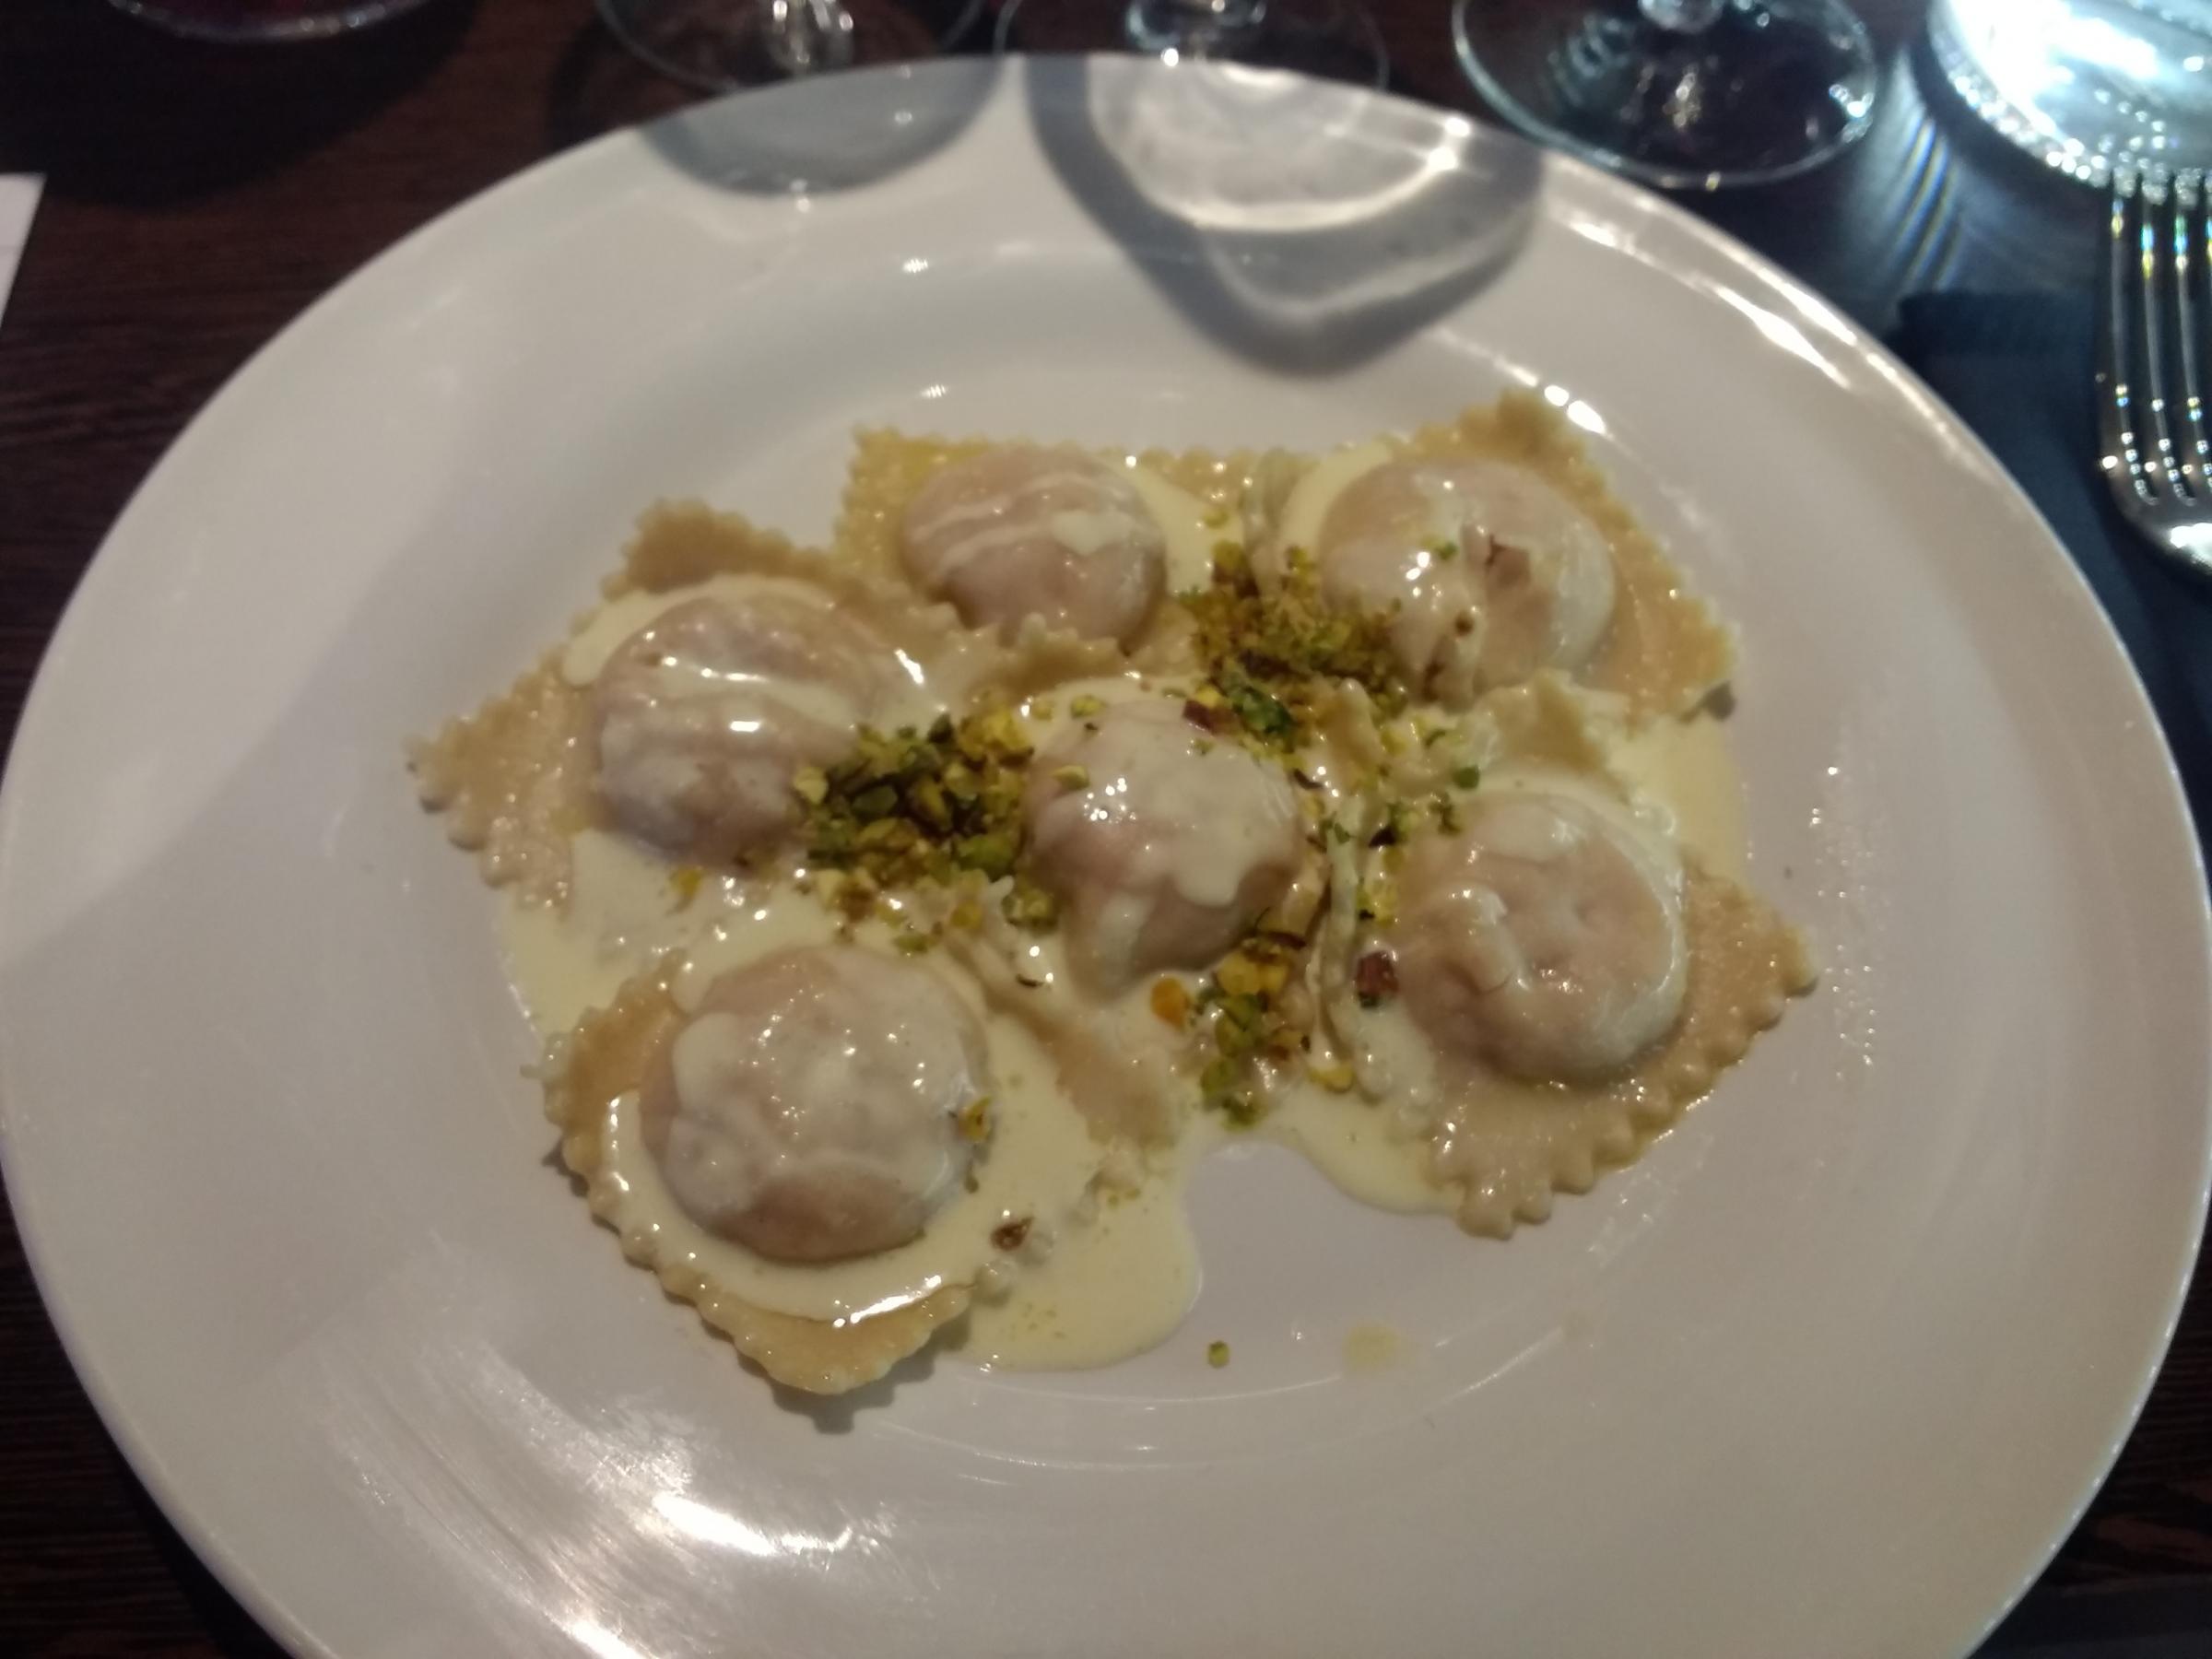 From the Da Noi spring menu taster evening: Ravioli ripieni di Mortadella; Mortadella filled ravioli, PDO pecrorino sauce, pistachios.